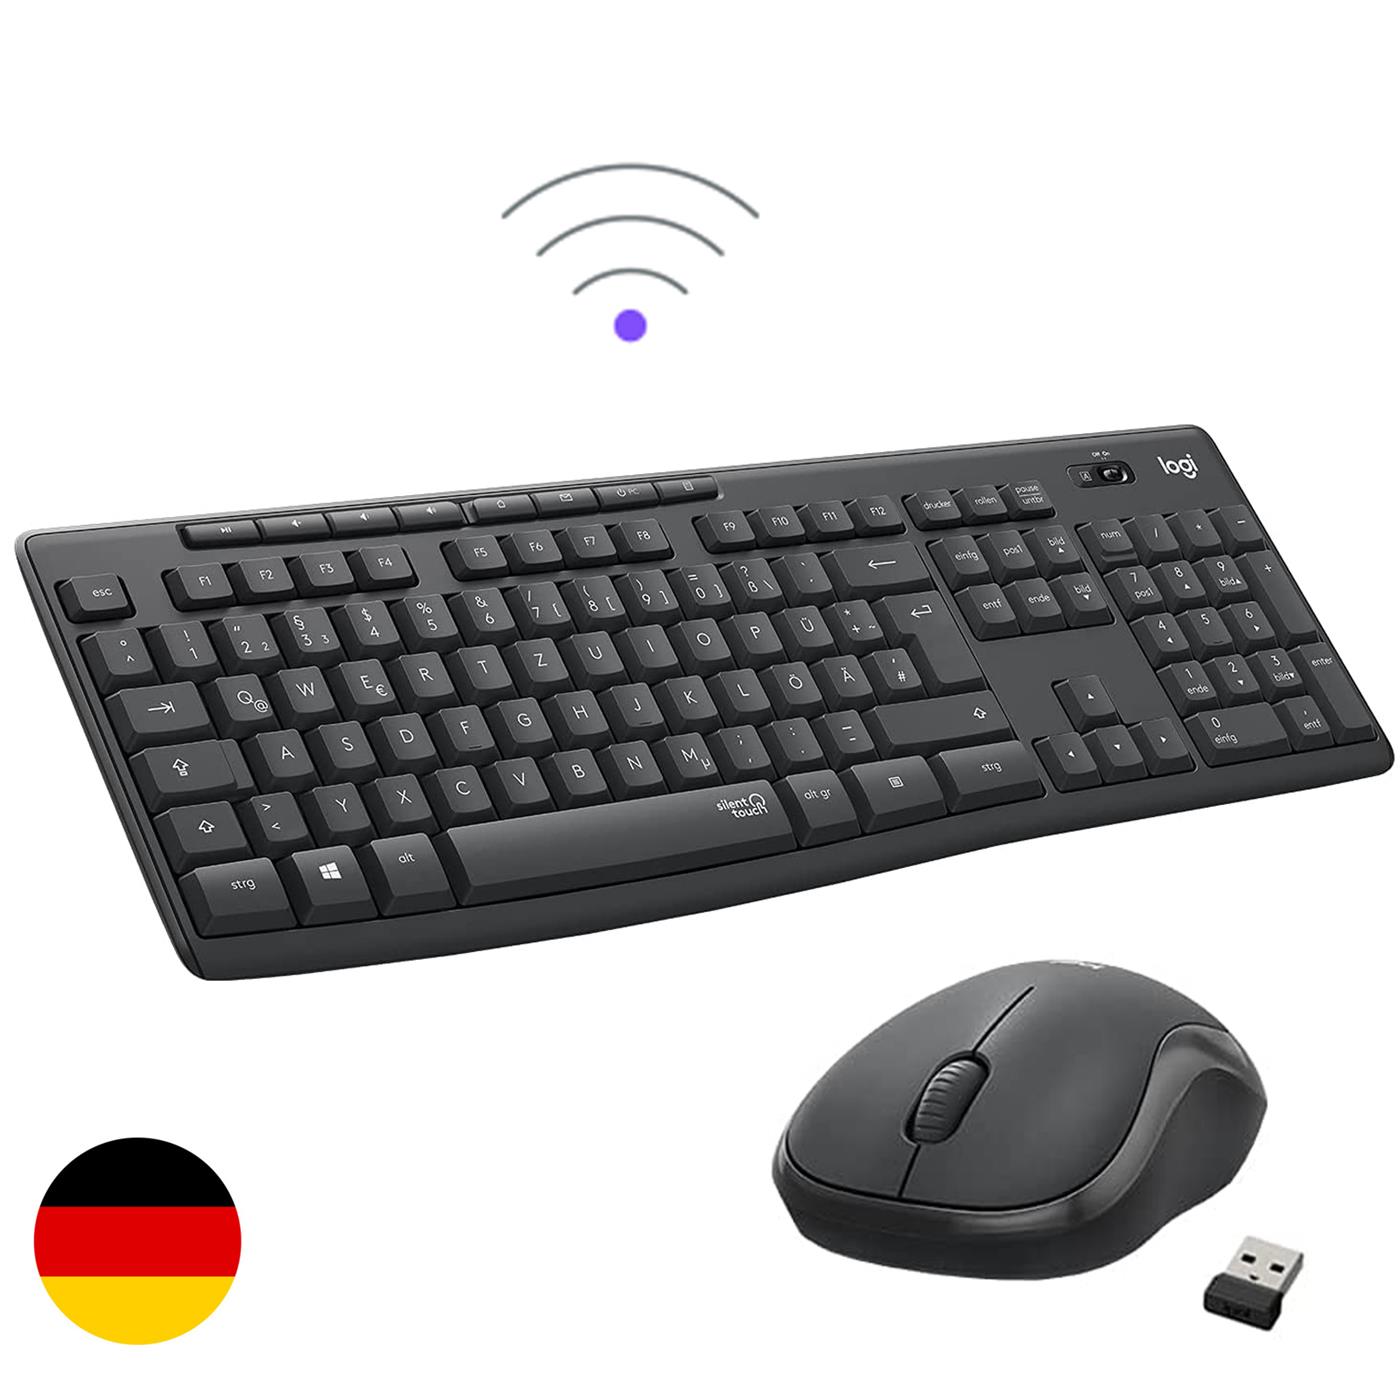 Logitech Logitech Funk QWERTZ Tastatur Wireless Maus SET Keyboard Mouse USB Kabel PC 